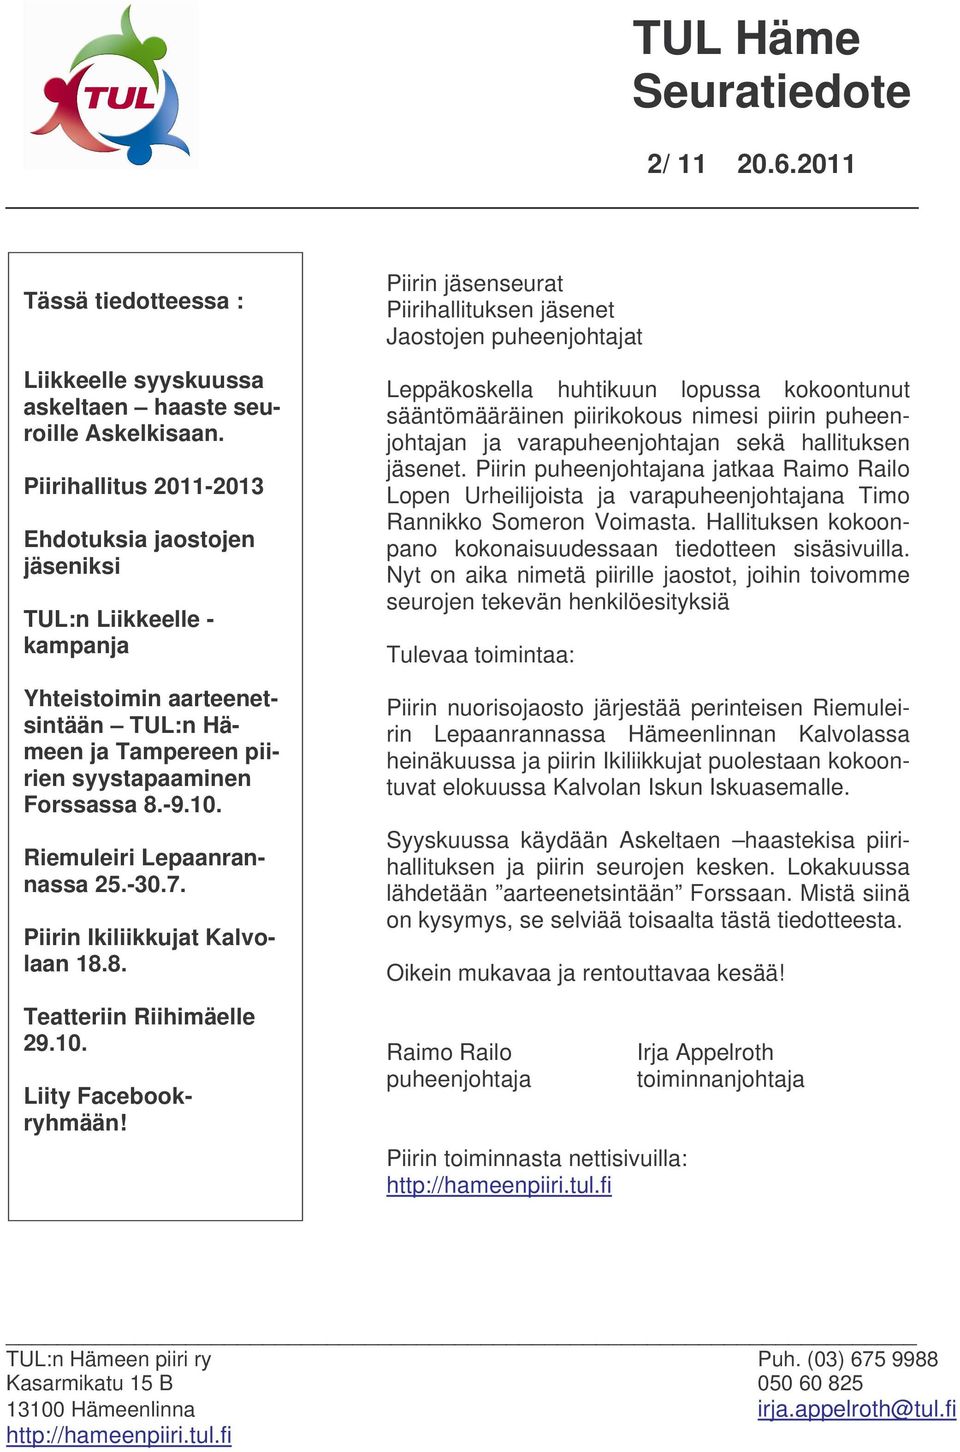 Riemuleiri Lepaanrannassa 25.-30.7. Piirin Ikiliikkujat Kalvolaan 18.8. Teatteriin Riihimäelle 29.10. Liity Facebookryhmään!